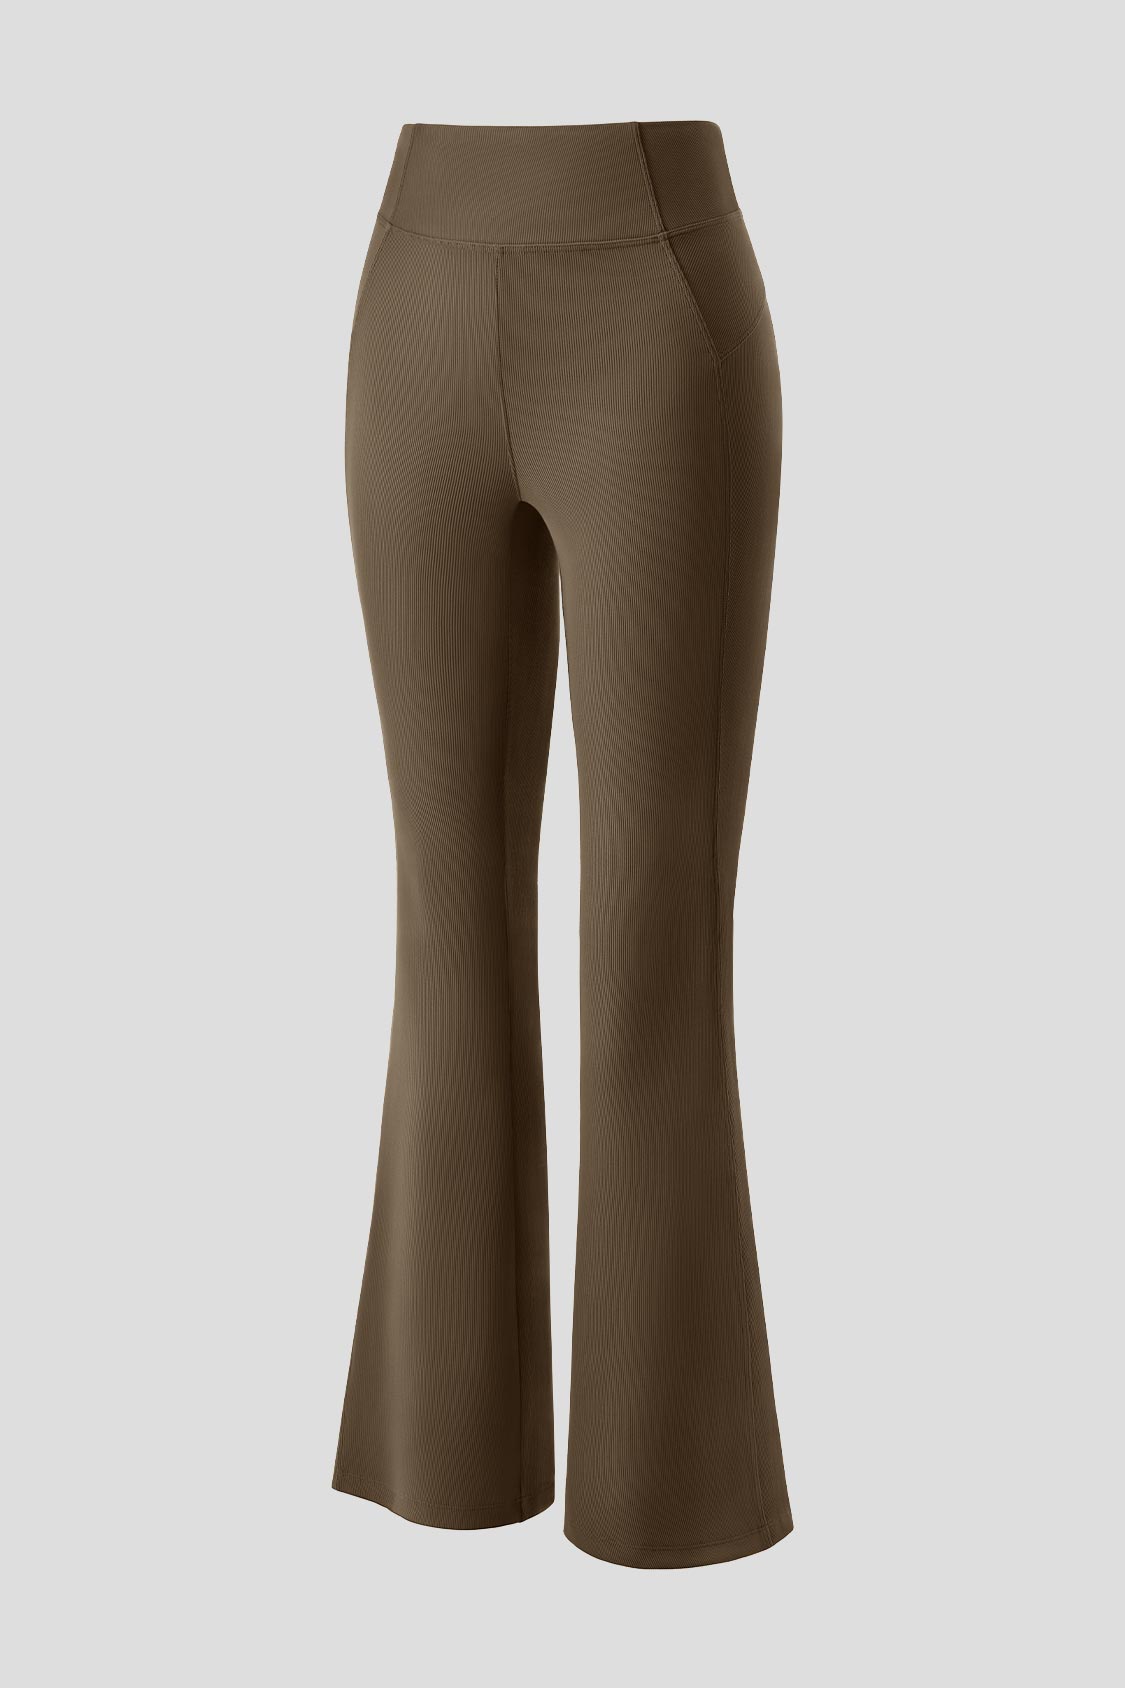 BeQueen Addictive Leggings - Chocolate Brown – BeQueenSportswear